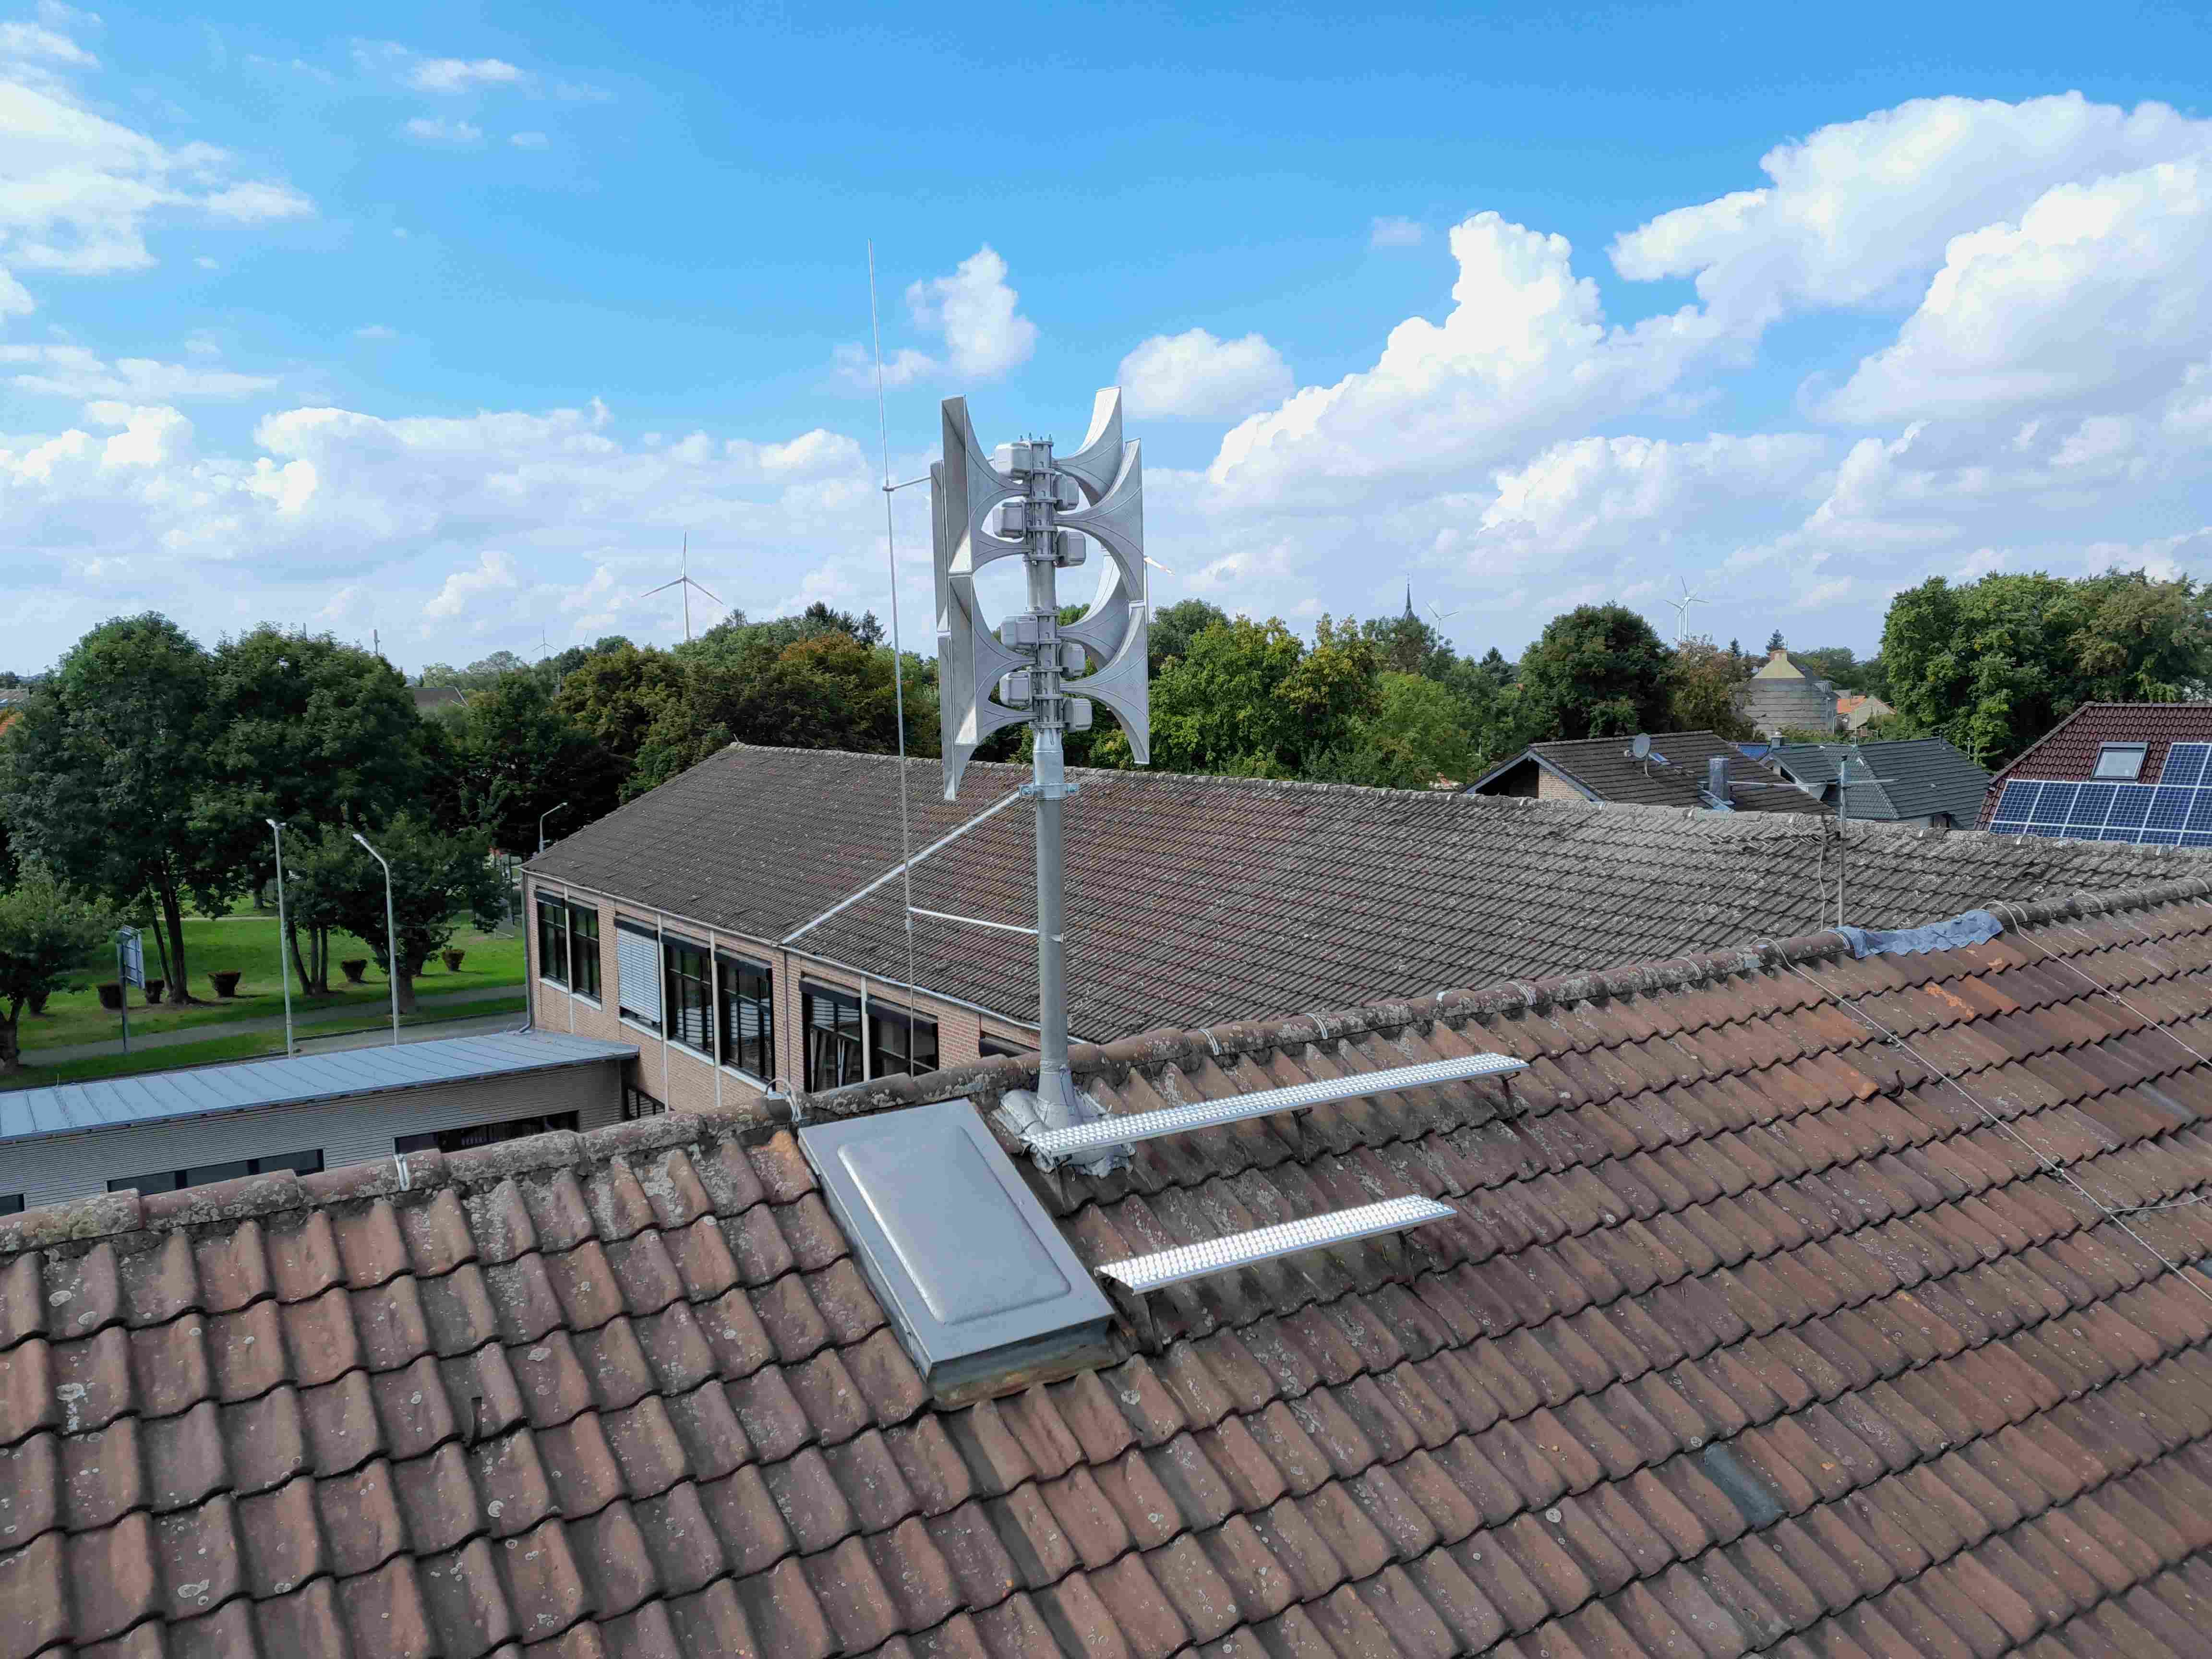 Sirenenanlage Siersdorf Mühlenstraße: Eine der ersten neuen, digitalen Sirenenwarnanlagen in der Gemeinde Aldenhoven wurde auf dem Dach der Johannesschule in Siersdorf installiert.